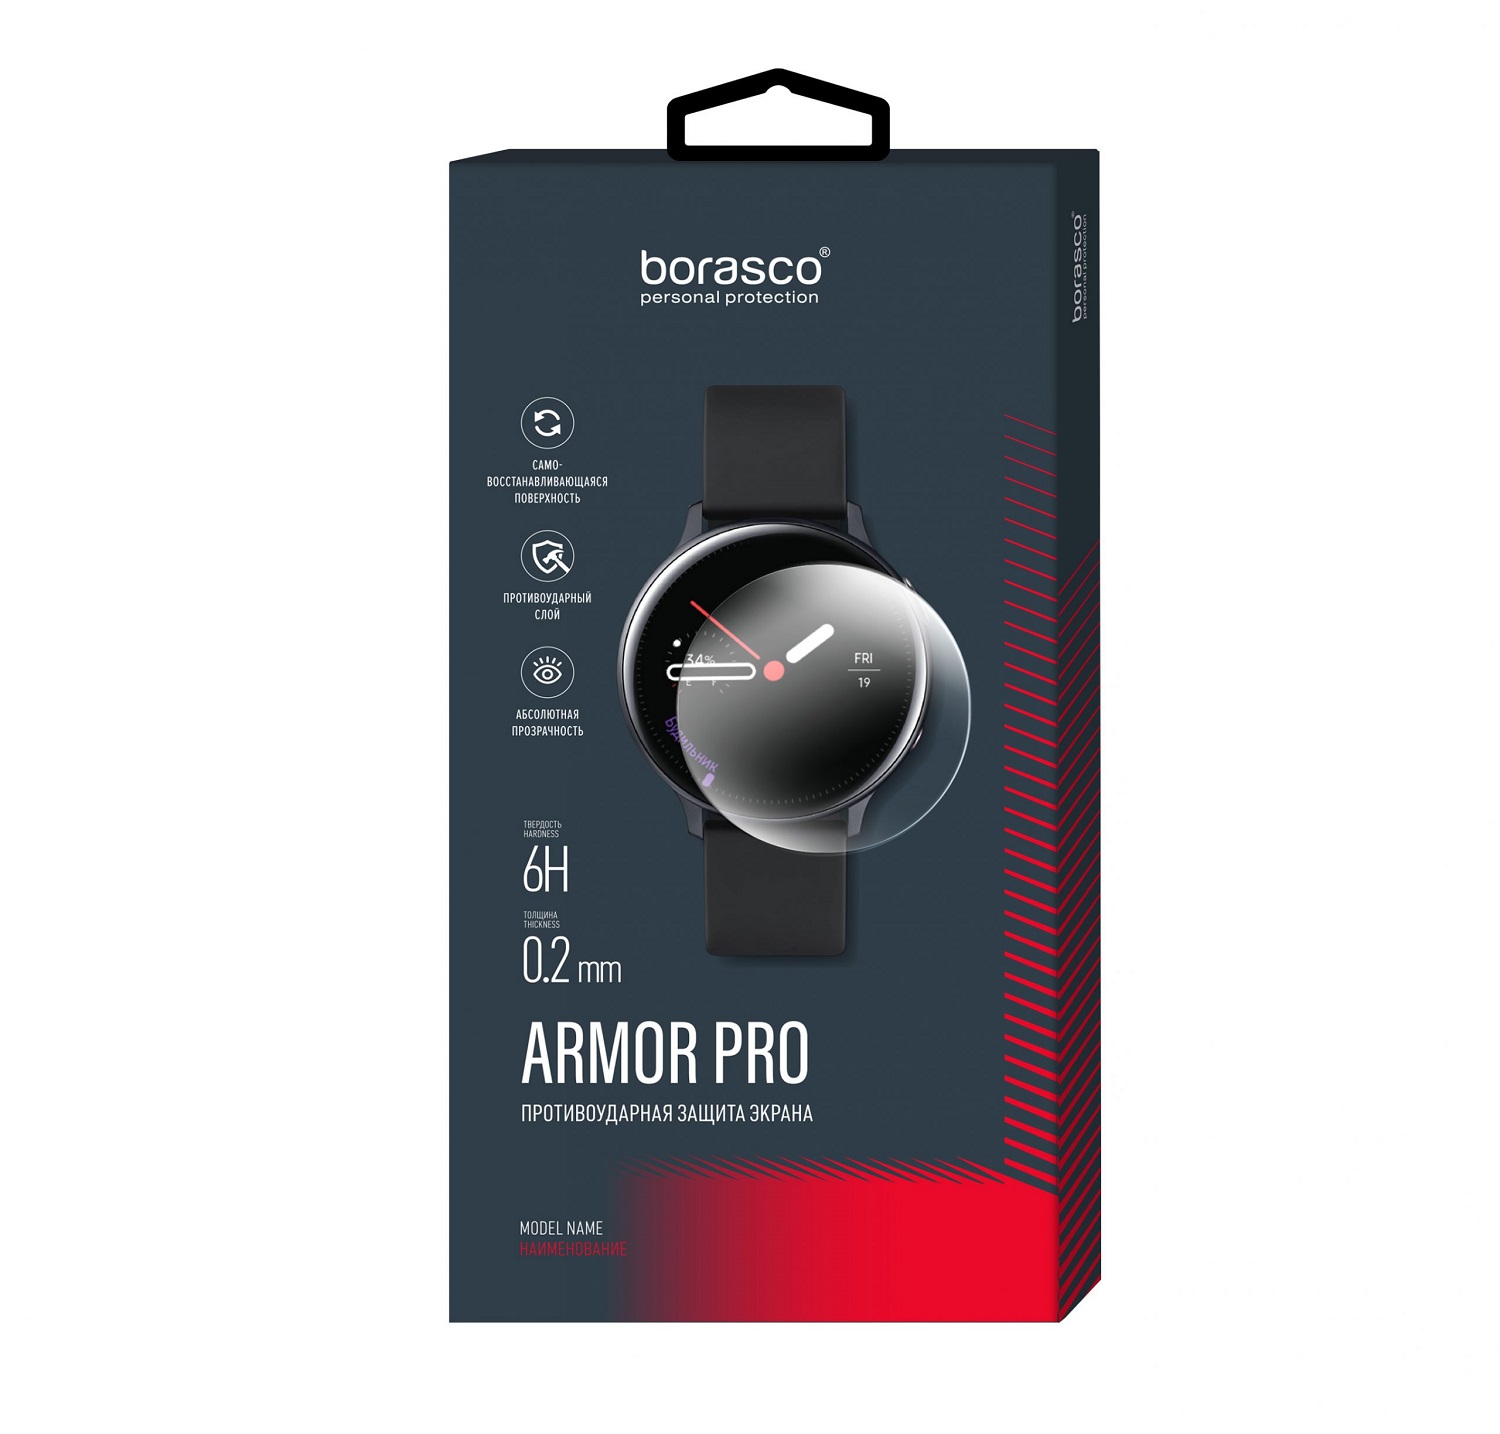 Защита экрана BoraSCO Armor Pro для Huawei Watch GT 2 (46mm) защита экрана borasco armor pro для huawei watch fit